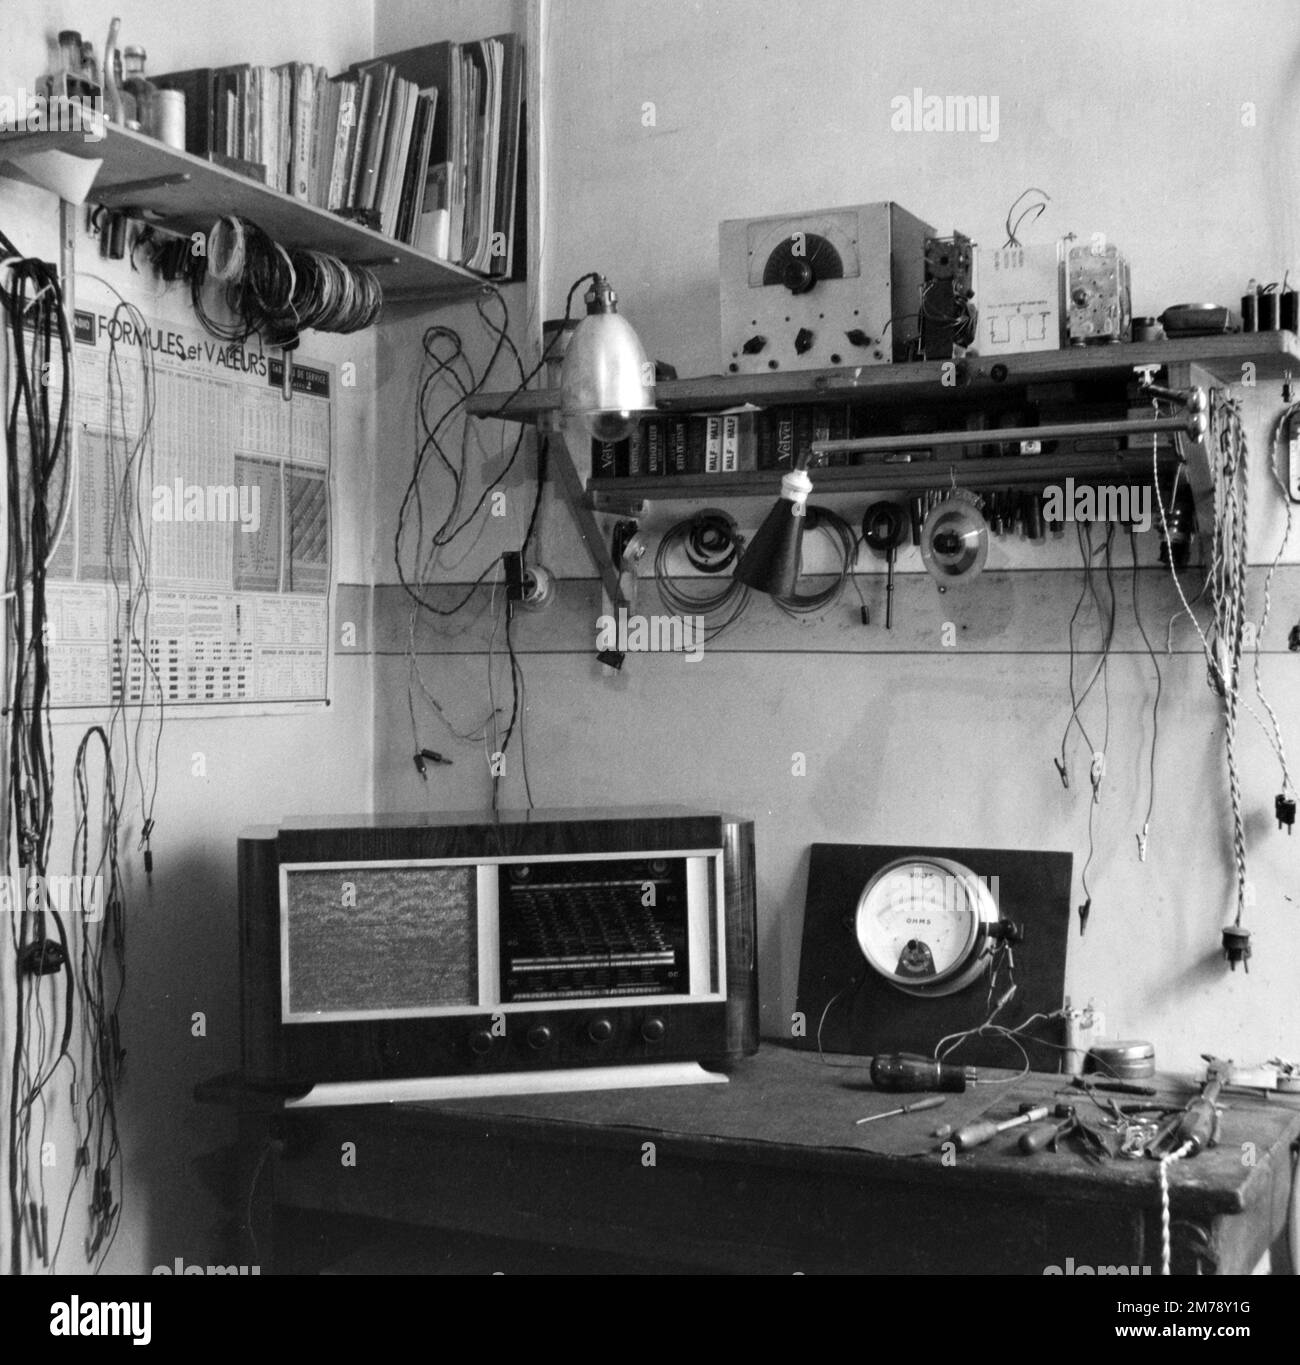 Oldtimer-Elektronik- oder Oldtimer-Radio-Reparaturwerkstatt in Radio Canebiere Electronic Shop Marseille France 1945. Schwarzweiß- oder Schwarzweißfotos im Vintage-Stil. Stockfoto